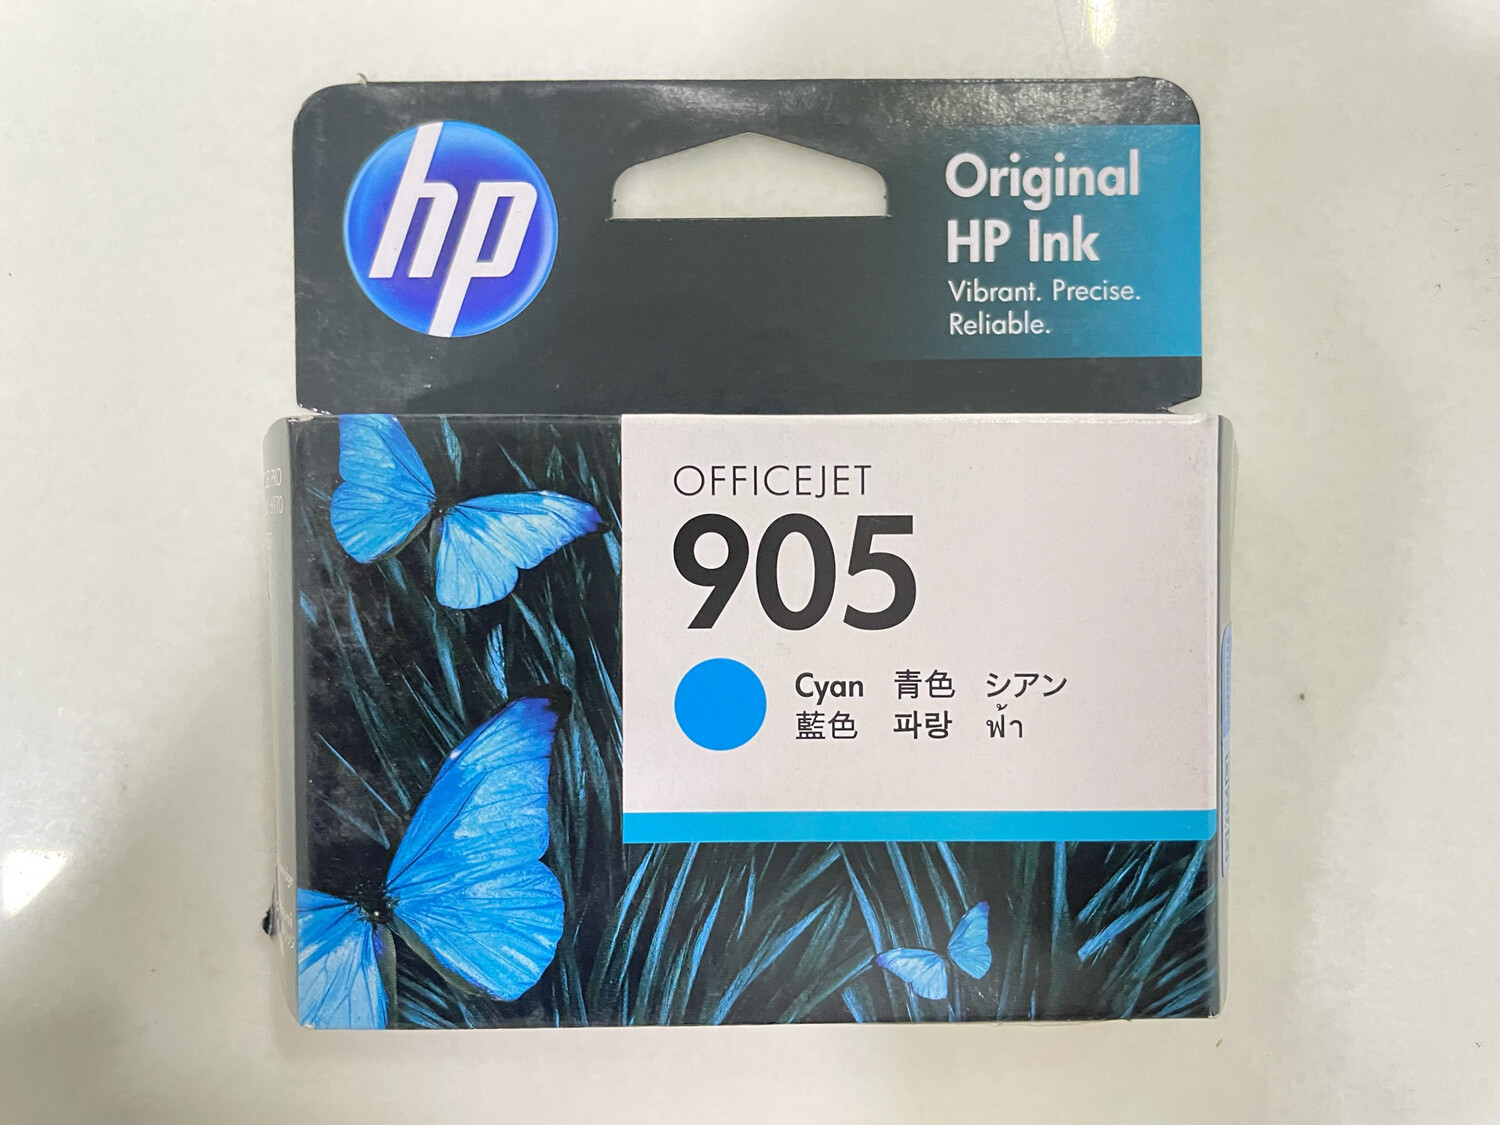 HP Officejet 905 Ink Cartridge, Cyan, T6L89CAA